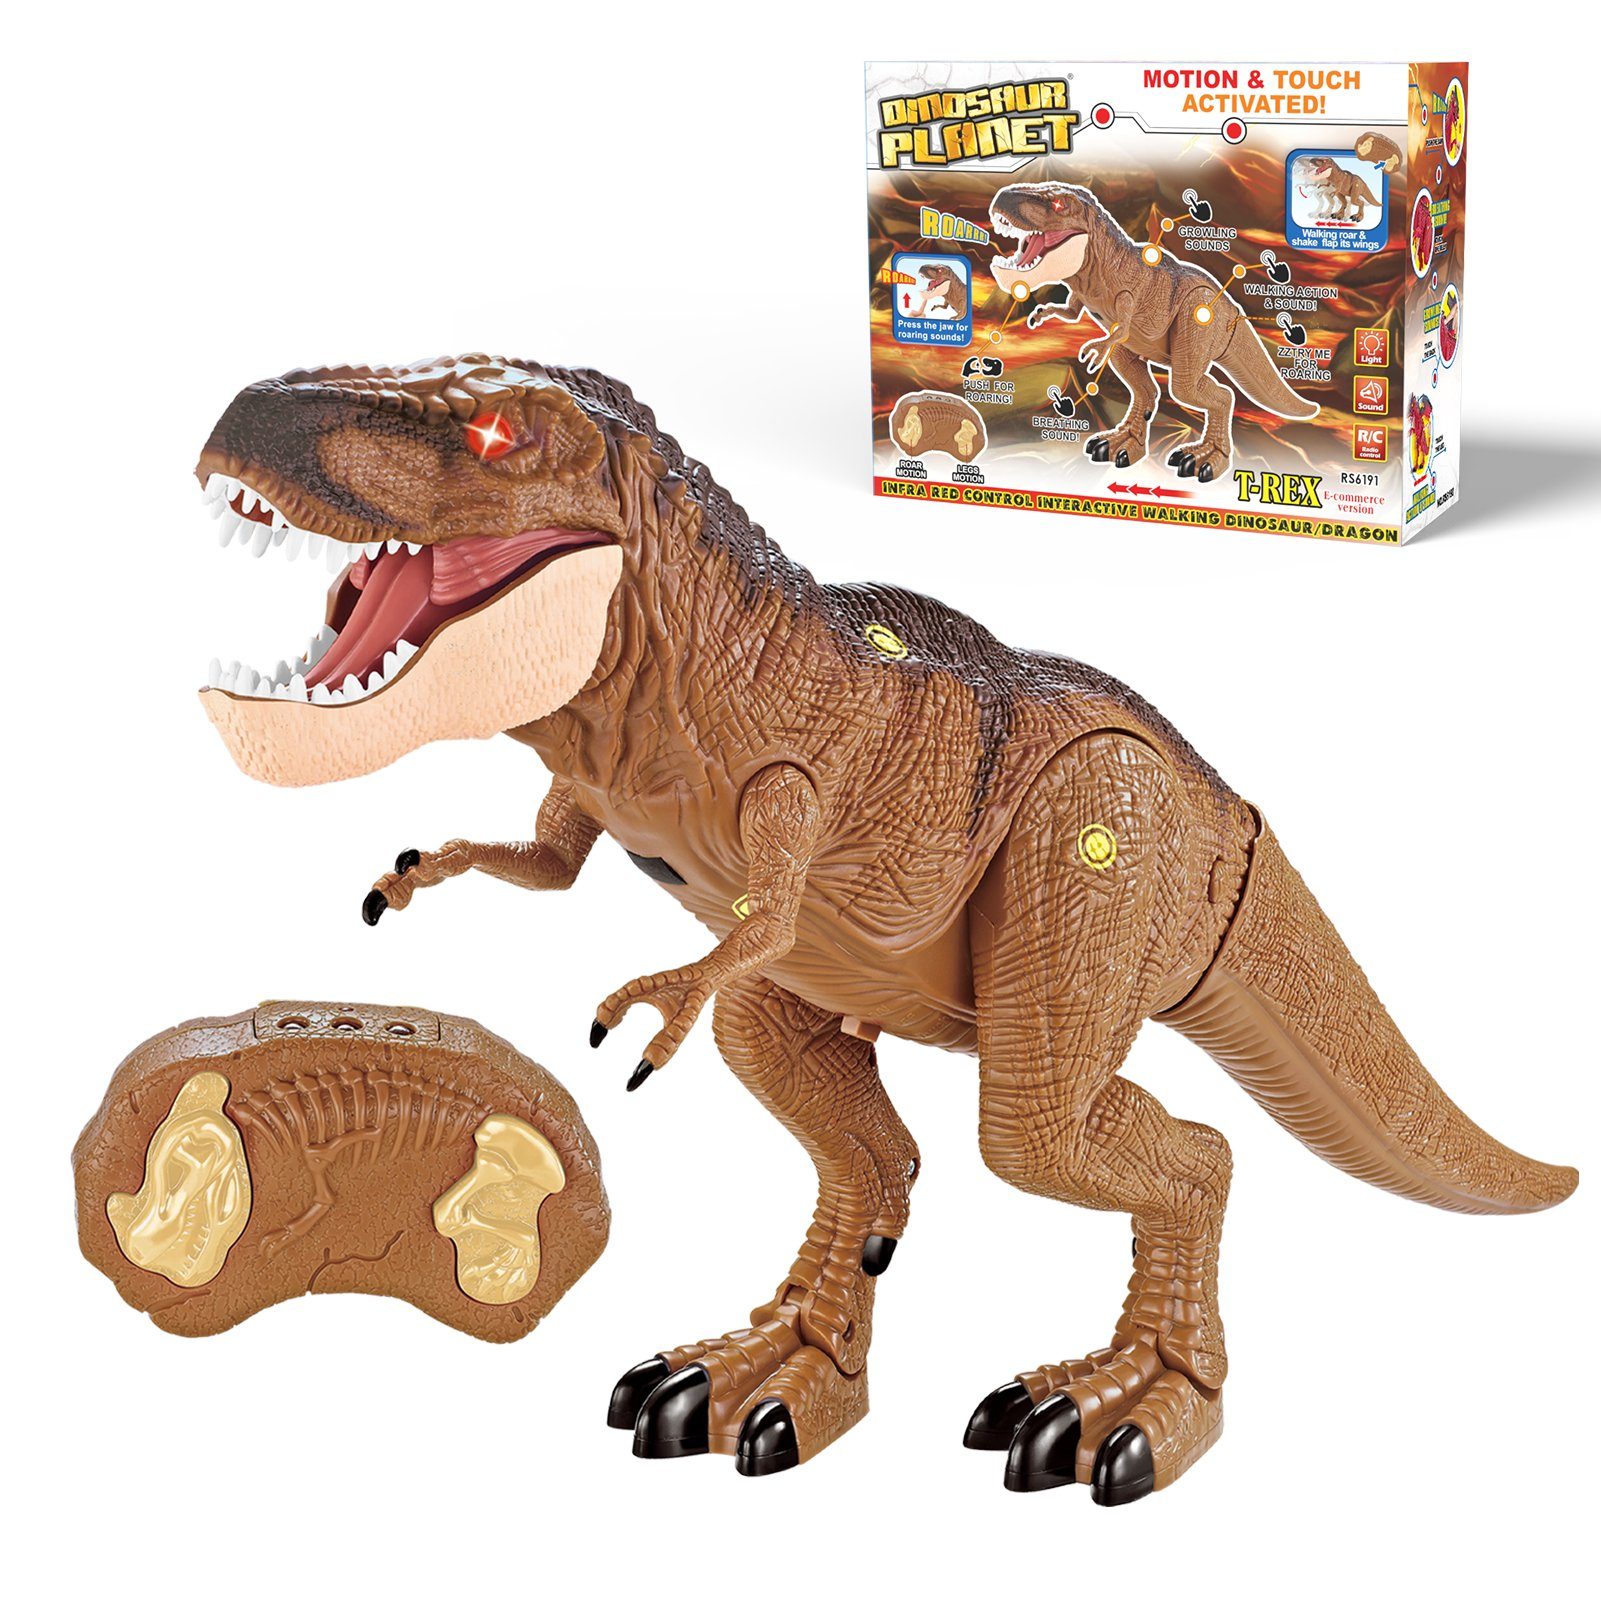 Esun Spielfigur Ferngesteuert Dinosaurier Spielzeug ab 4 5 6 8 jahre jungen,  Tyrannosaurus rex Dino Roboter Kinder spielzeug mit Gehen und roar, Dino  Ferngesteuert mit LED Licht, Geschenk junge 4 6 7